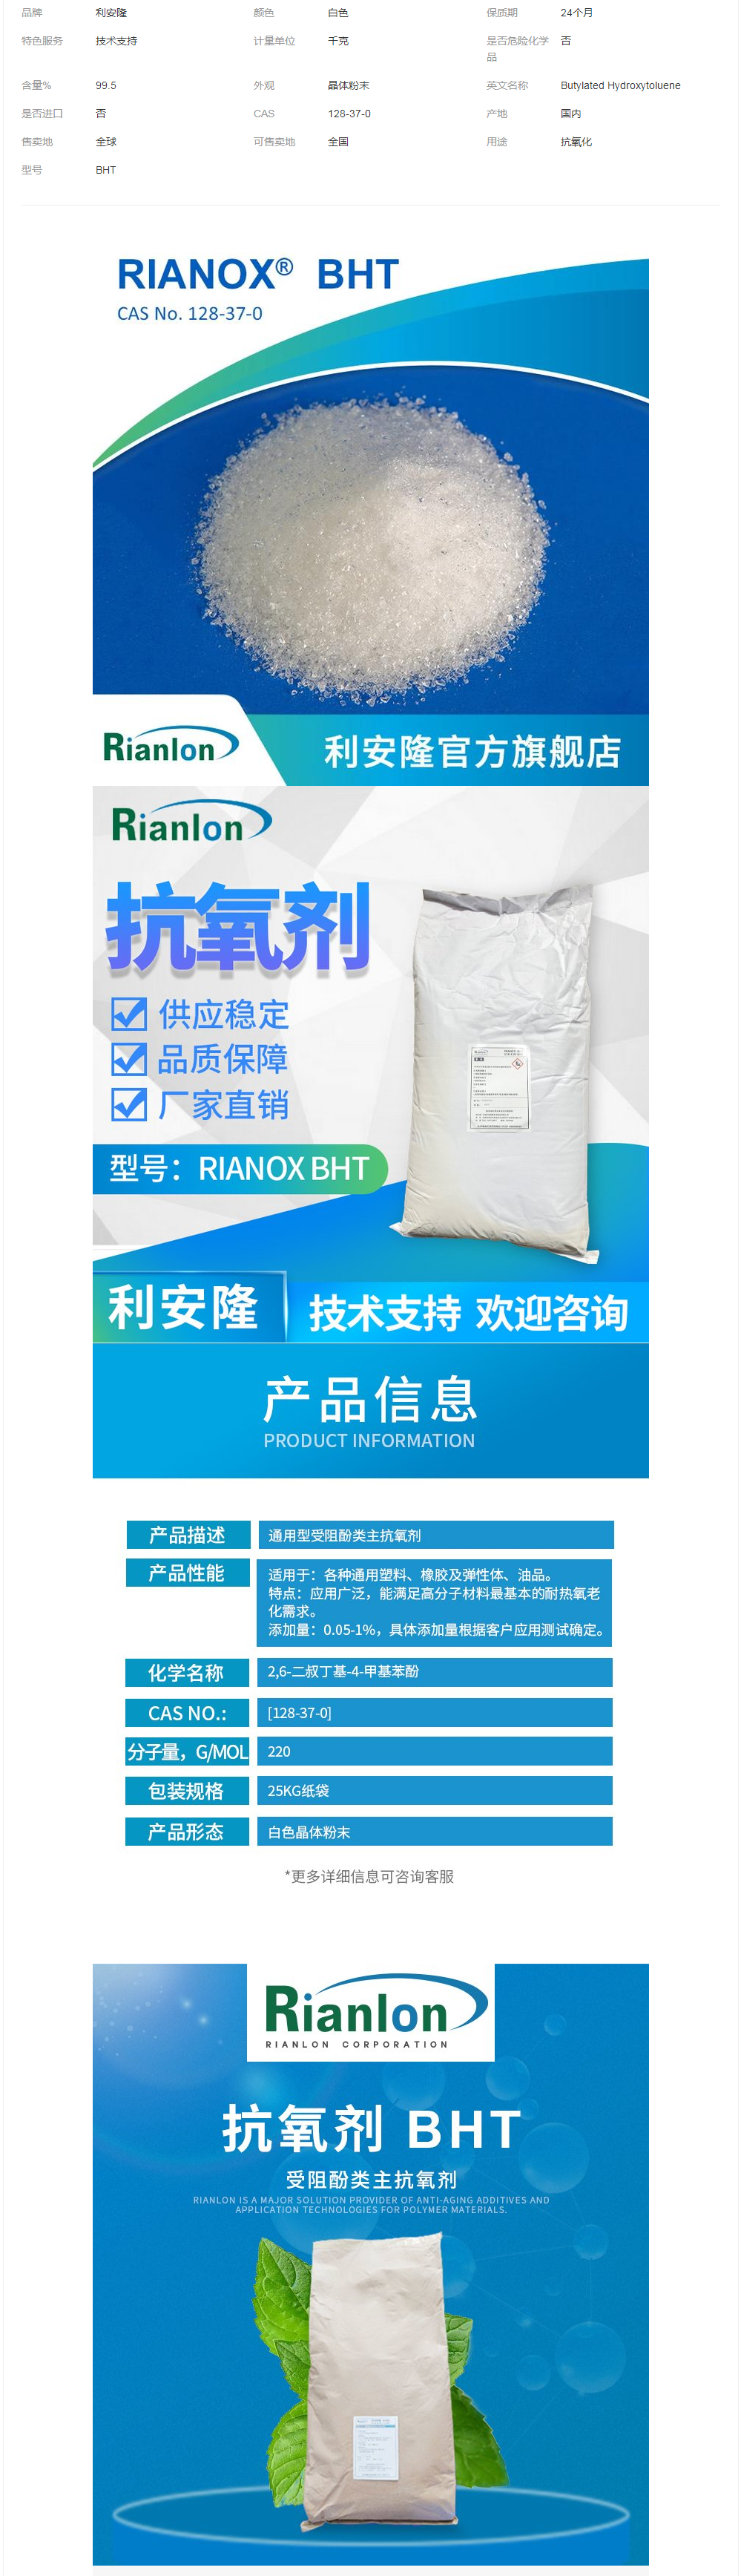 工业级BHT防老剂供应现货利安隆品牌生产助剂264.png